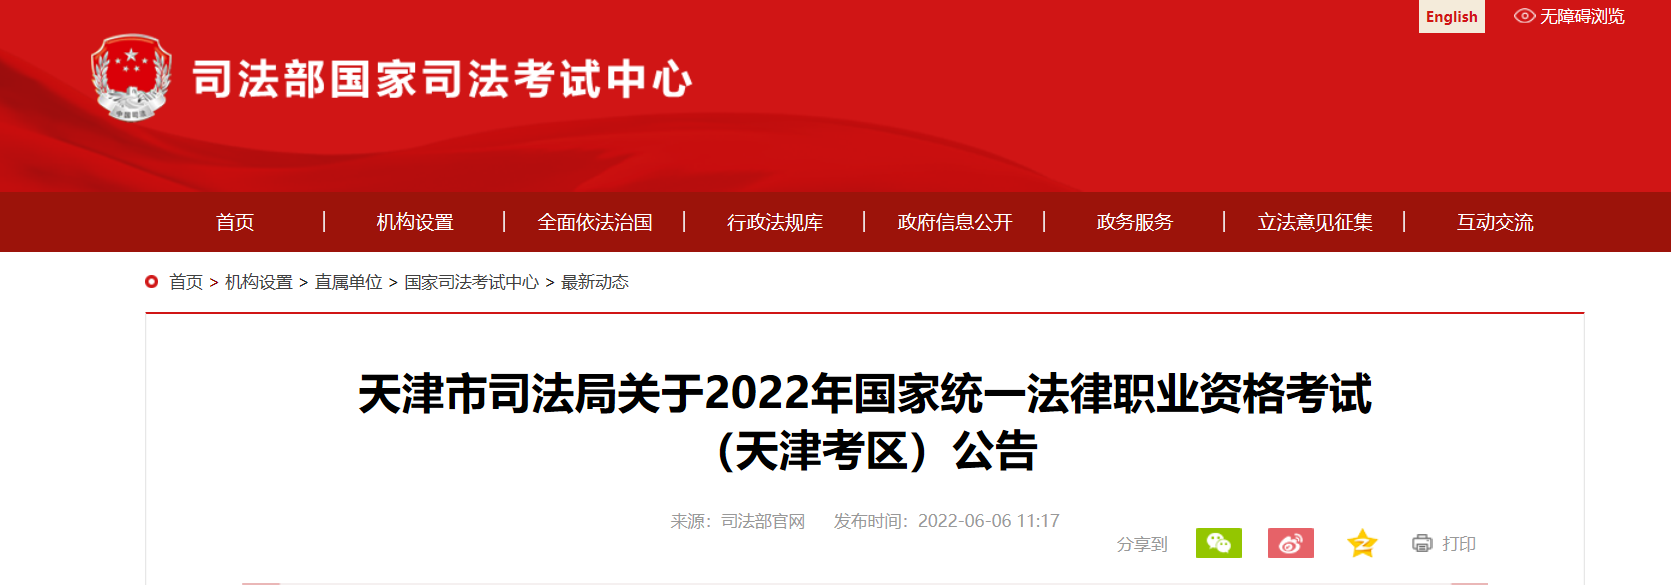 2022年天津国家统一法律职业资格考试资格审核及相关公告